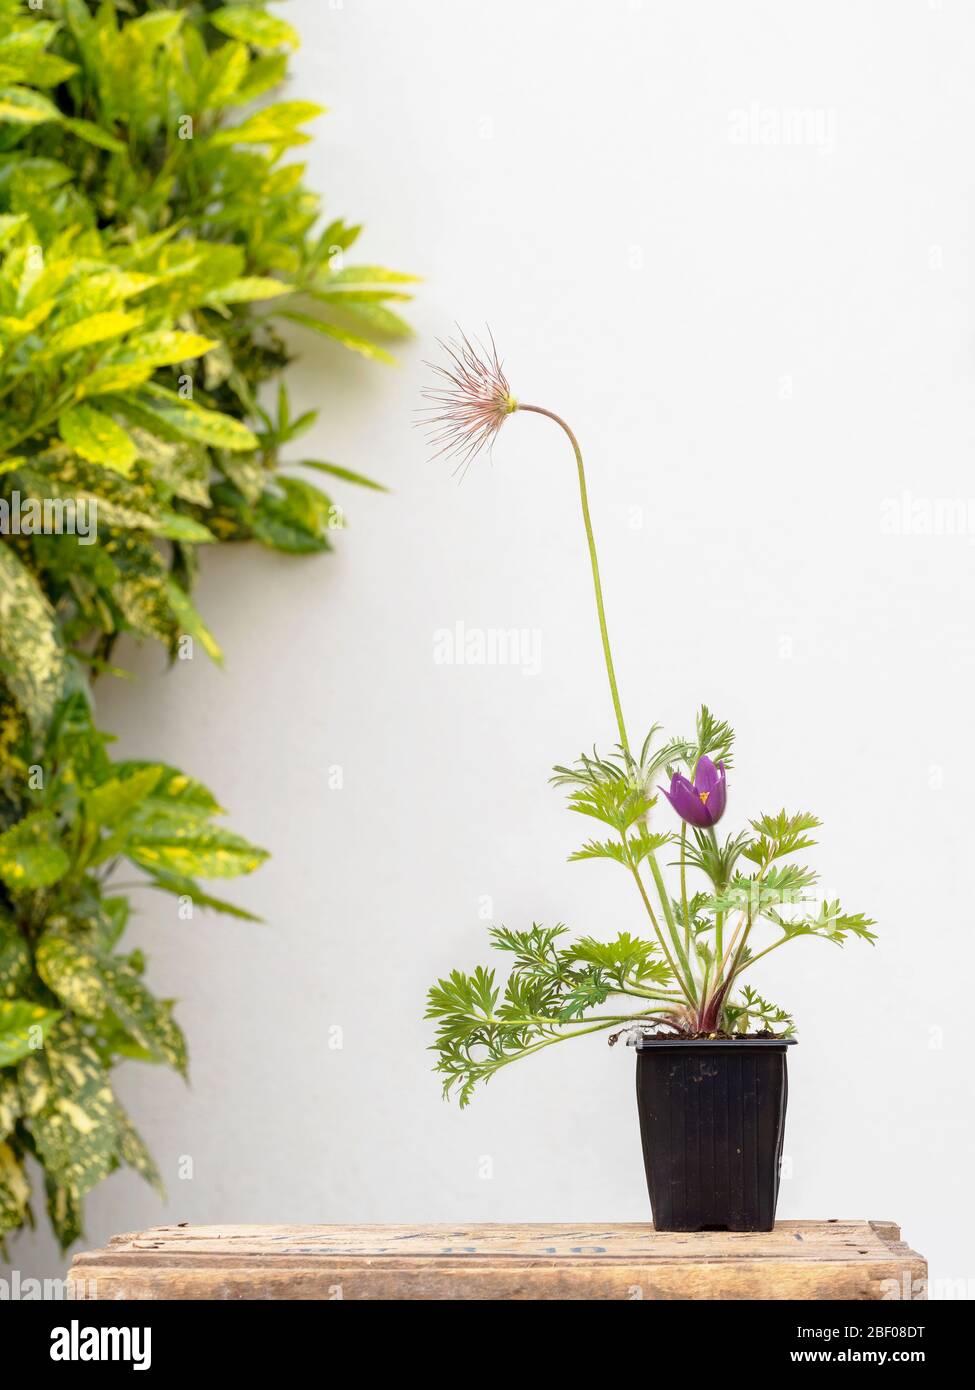 Pulsatilla vulgaris, auch bekannt als pasqueflower, Gartenpflanze, in kleiner Wanne, Gartenanlage mit vielseitigtem Lorbeer und weißer Wand dahinter. Stockfoto